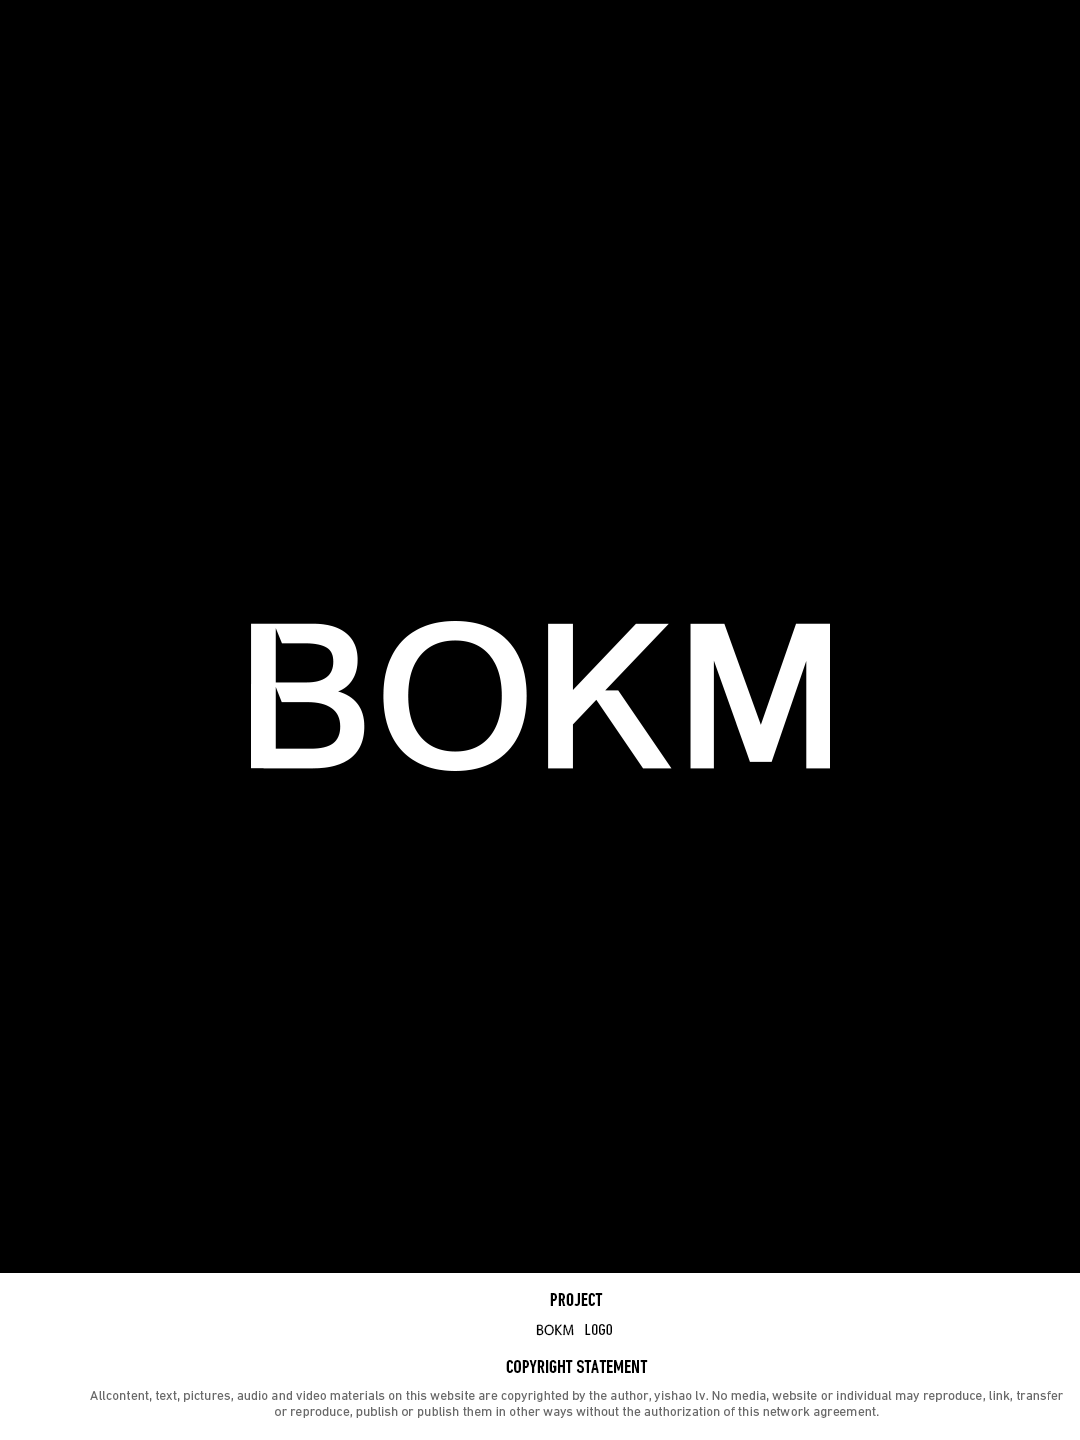 BOKM男装logo设计图8